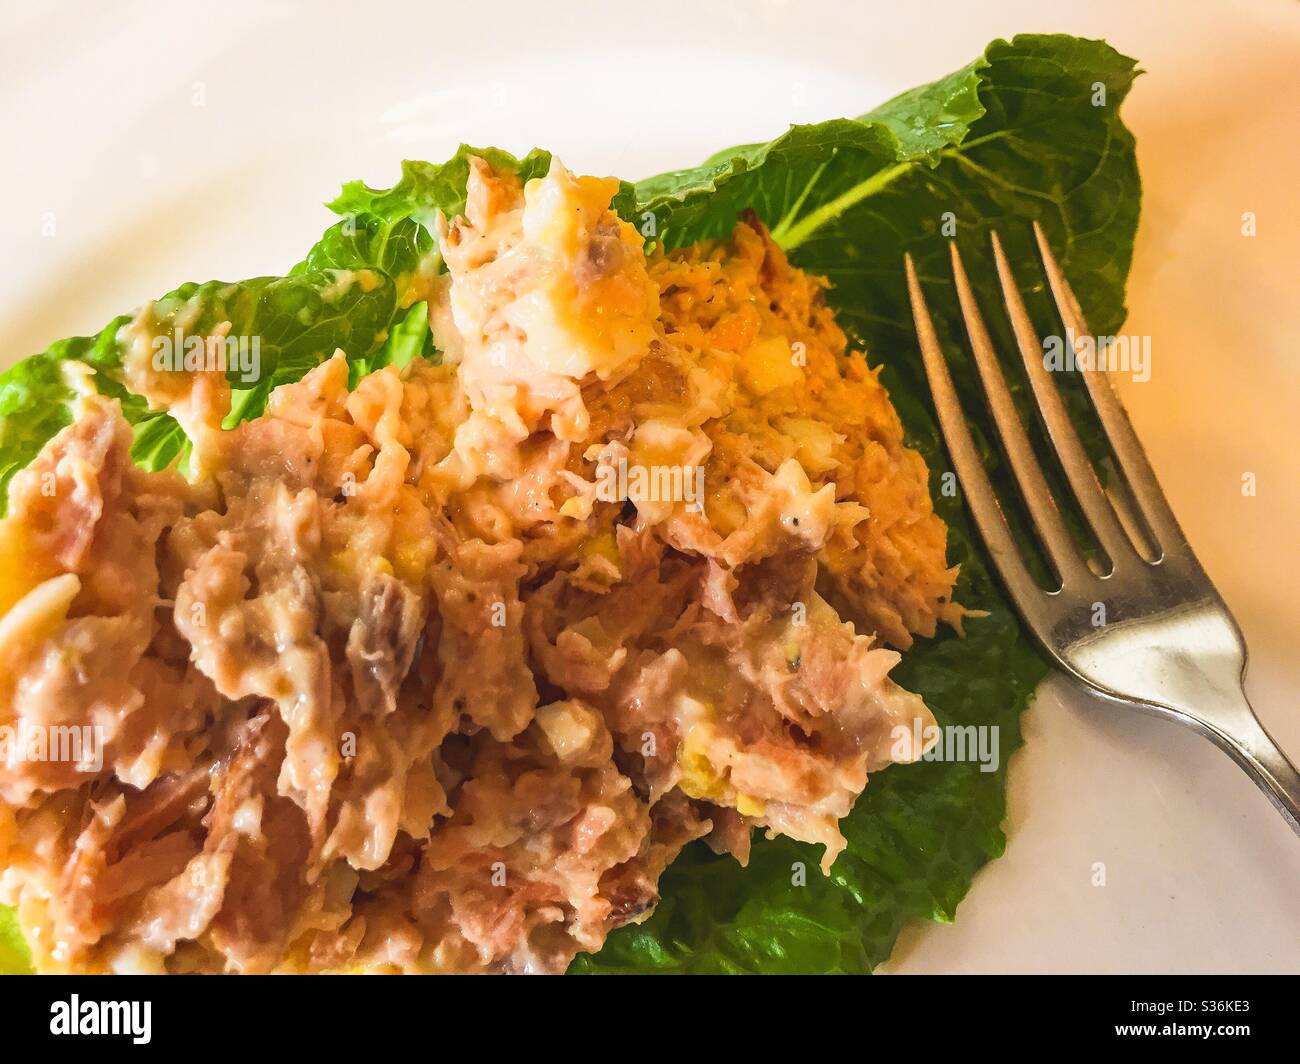 Salmon salad on romaine lettuce leaf. Stock Photo